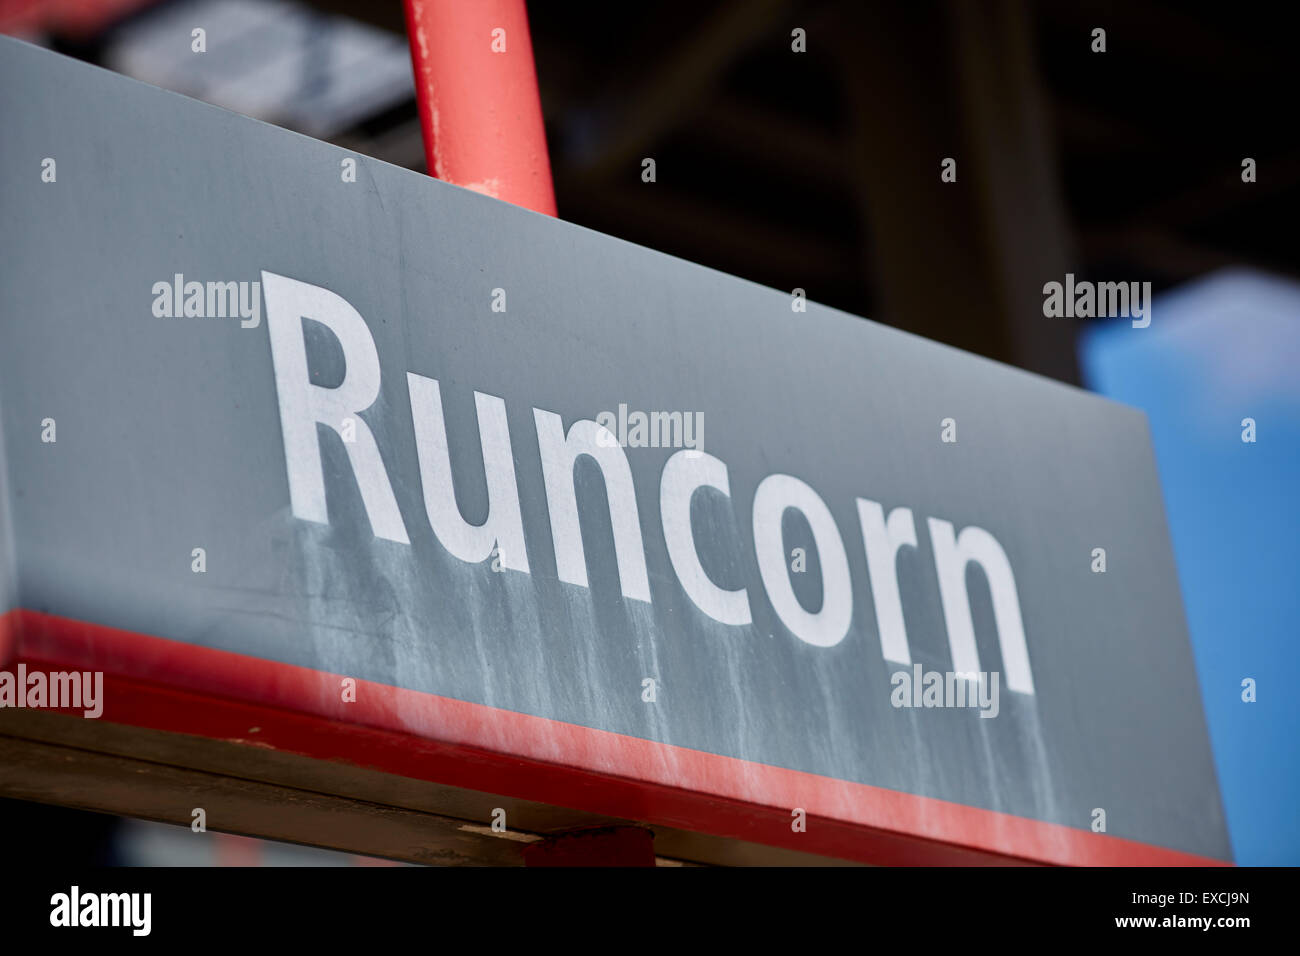 Runcorn ist eine Stadt und Fracht Industriehafen in Halton, Cheshire, UK.  Dort abgebildet sind zwei Bahnhöfe. Runcorn Hauptstrecke Stockfoto